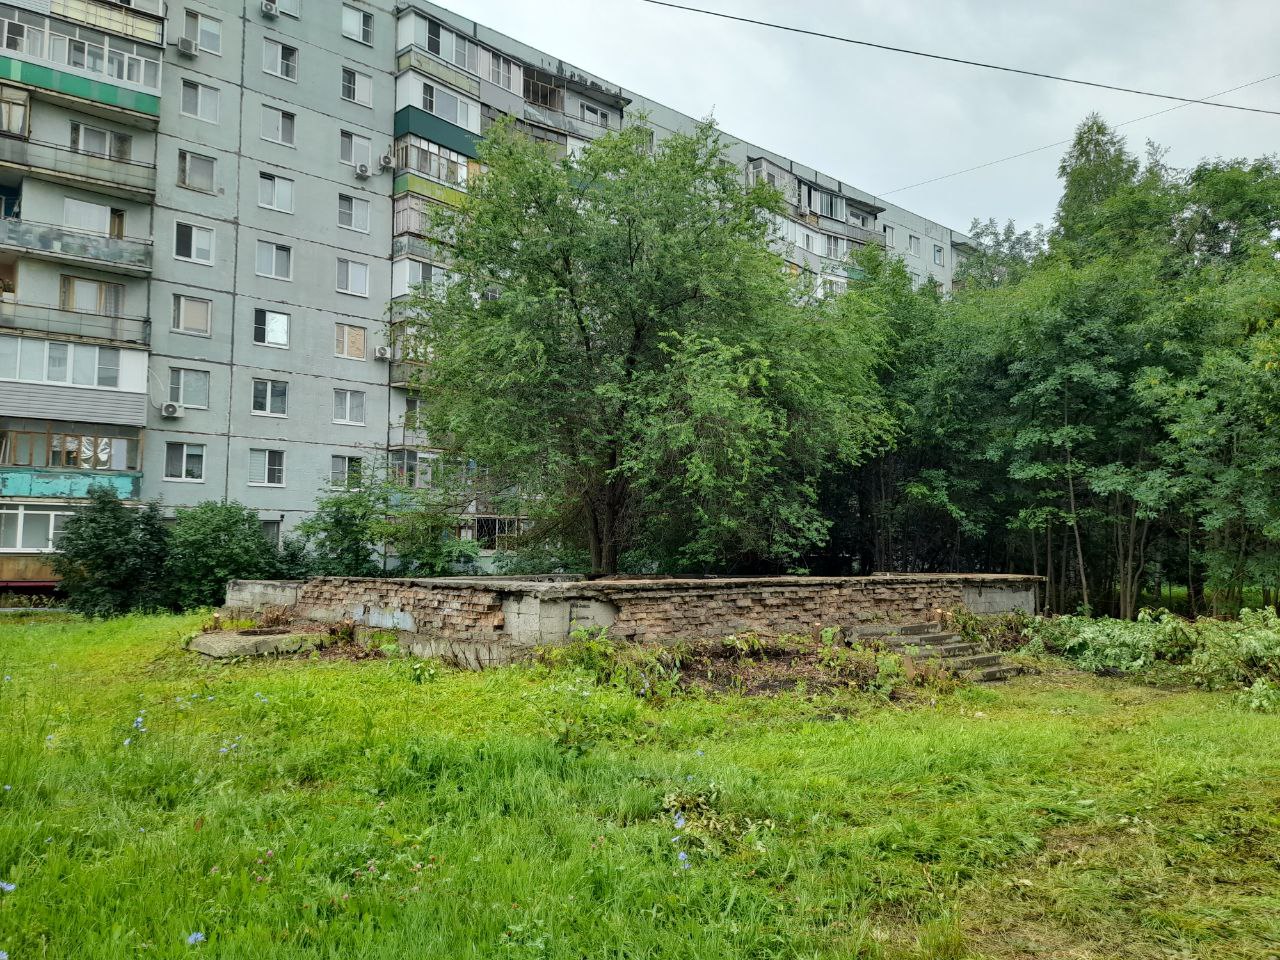 Администрация Октябрьского района взялась за фонтан в Арбеково. Ждать ли благоустройства этой зоны?